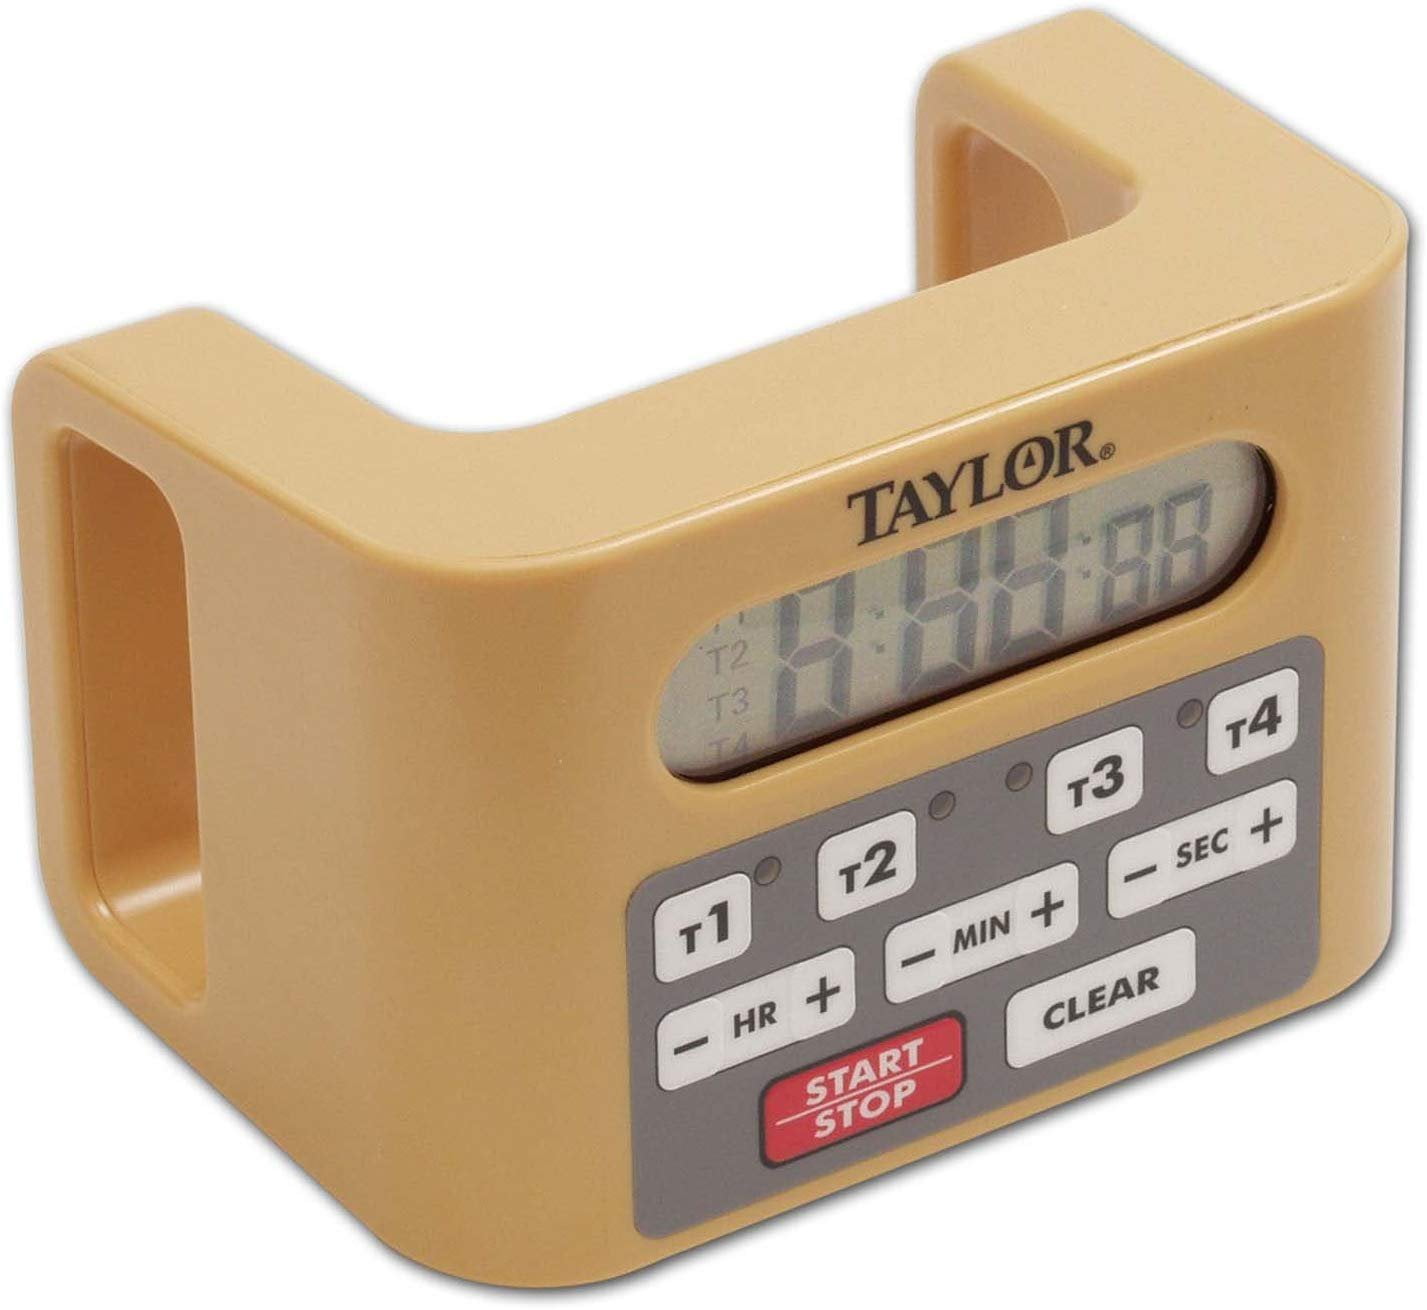 Taylor 5873 Super Loud Digital Timer 1 Day For Kitchen - Office Depot